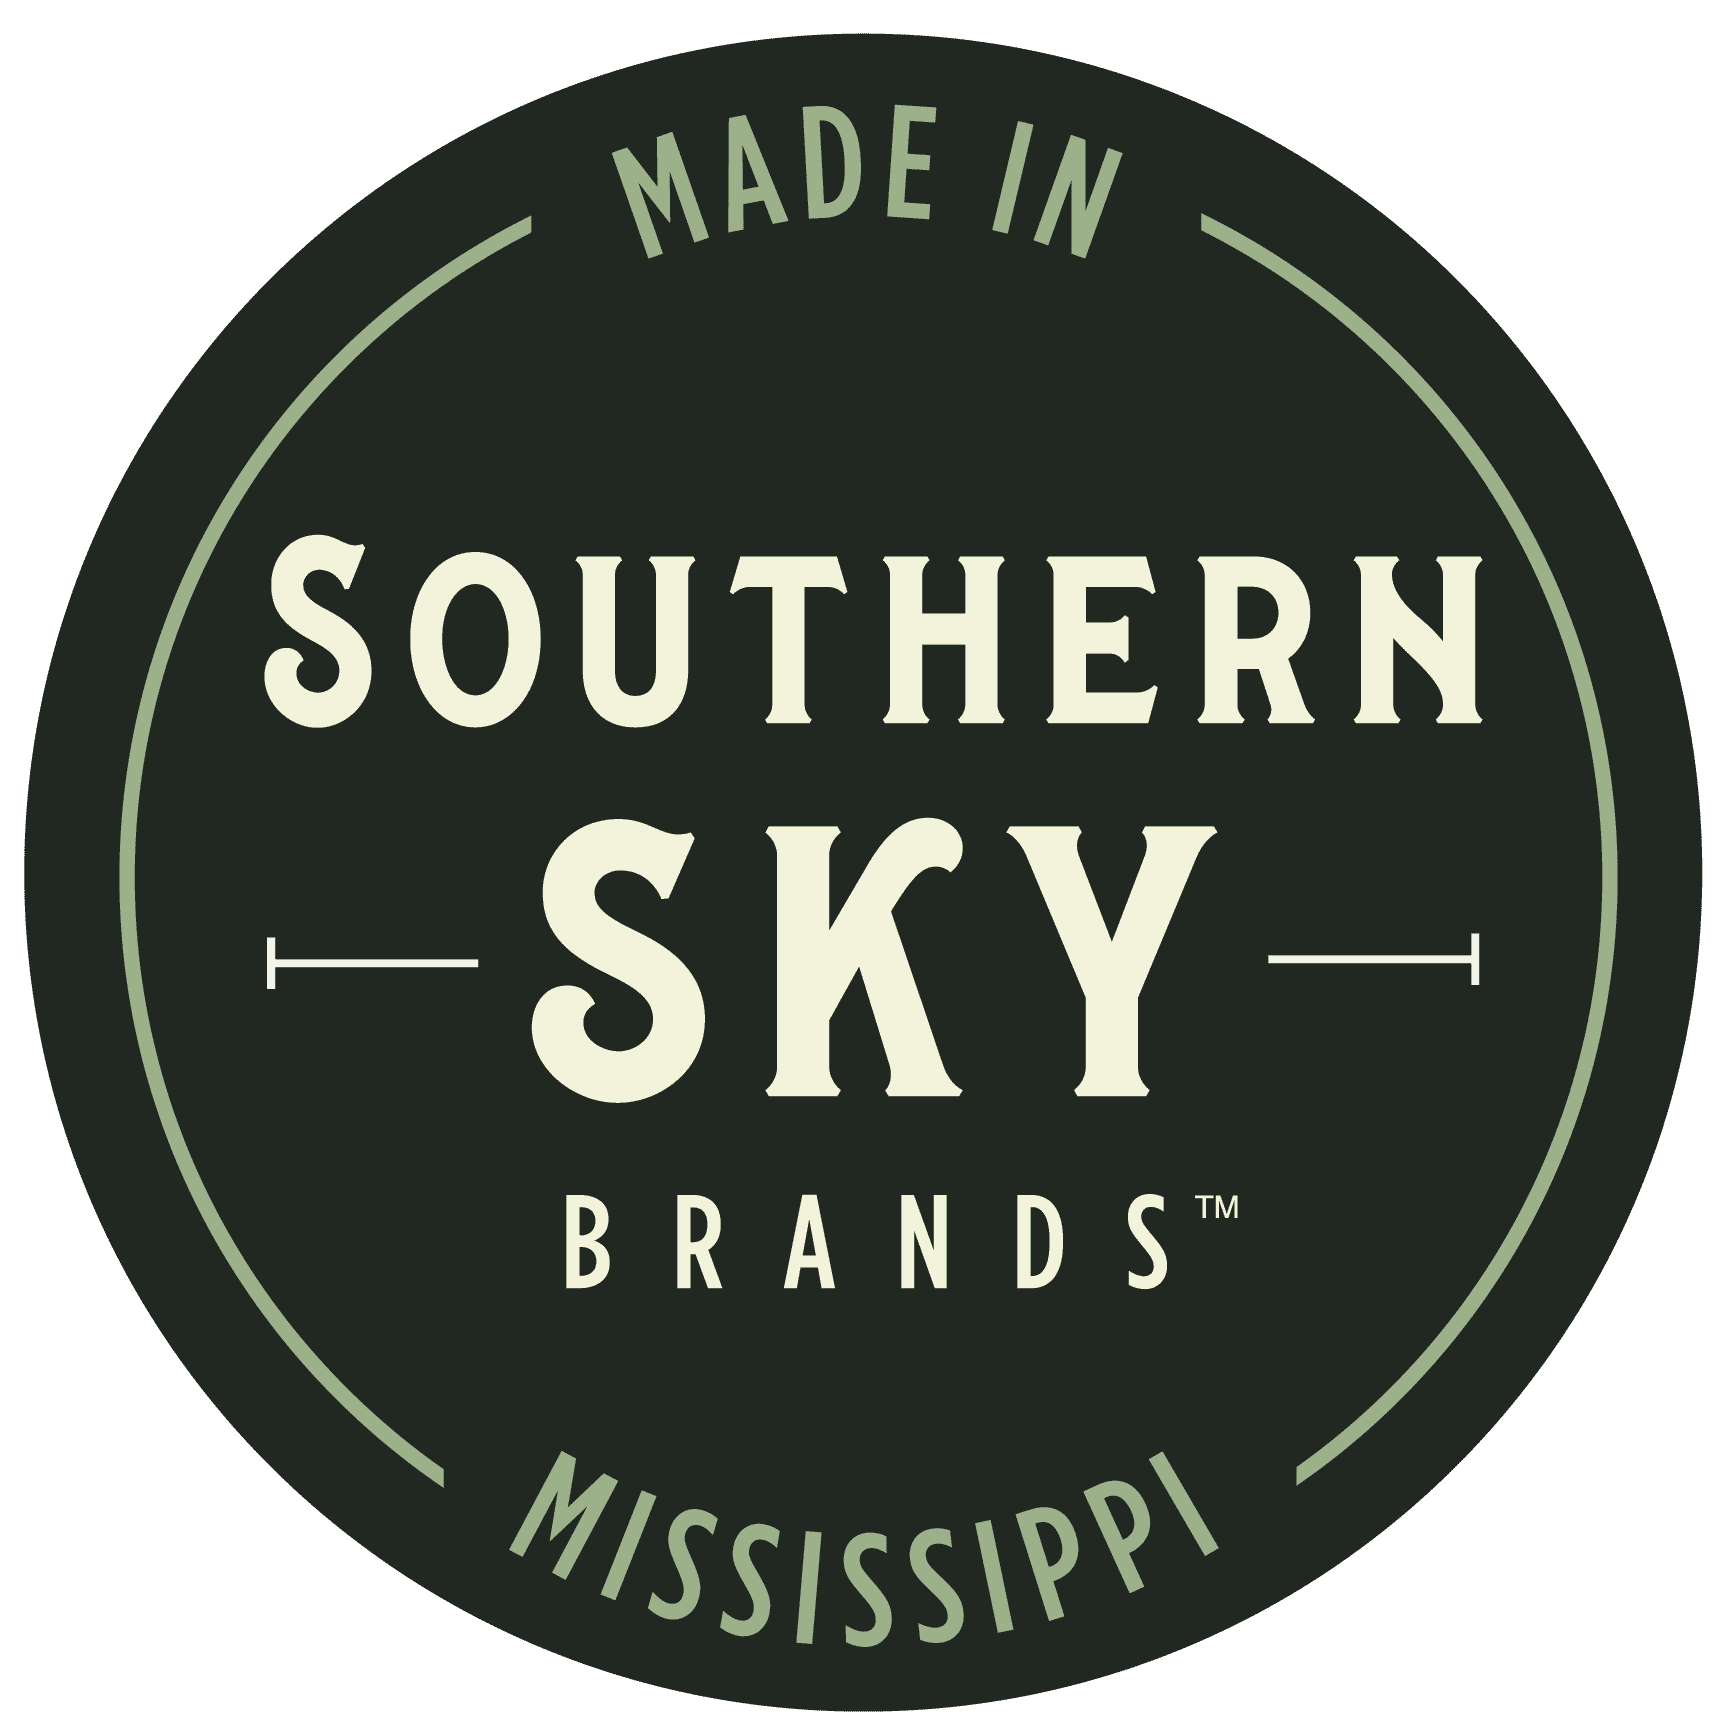 Southern Sky Brands